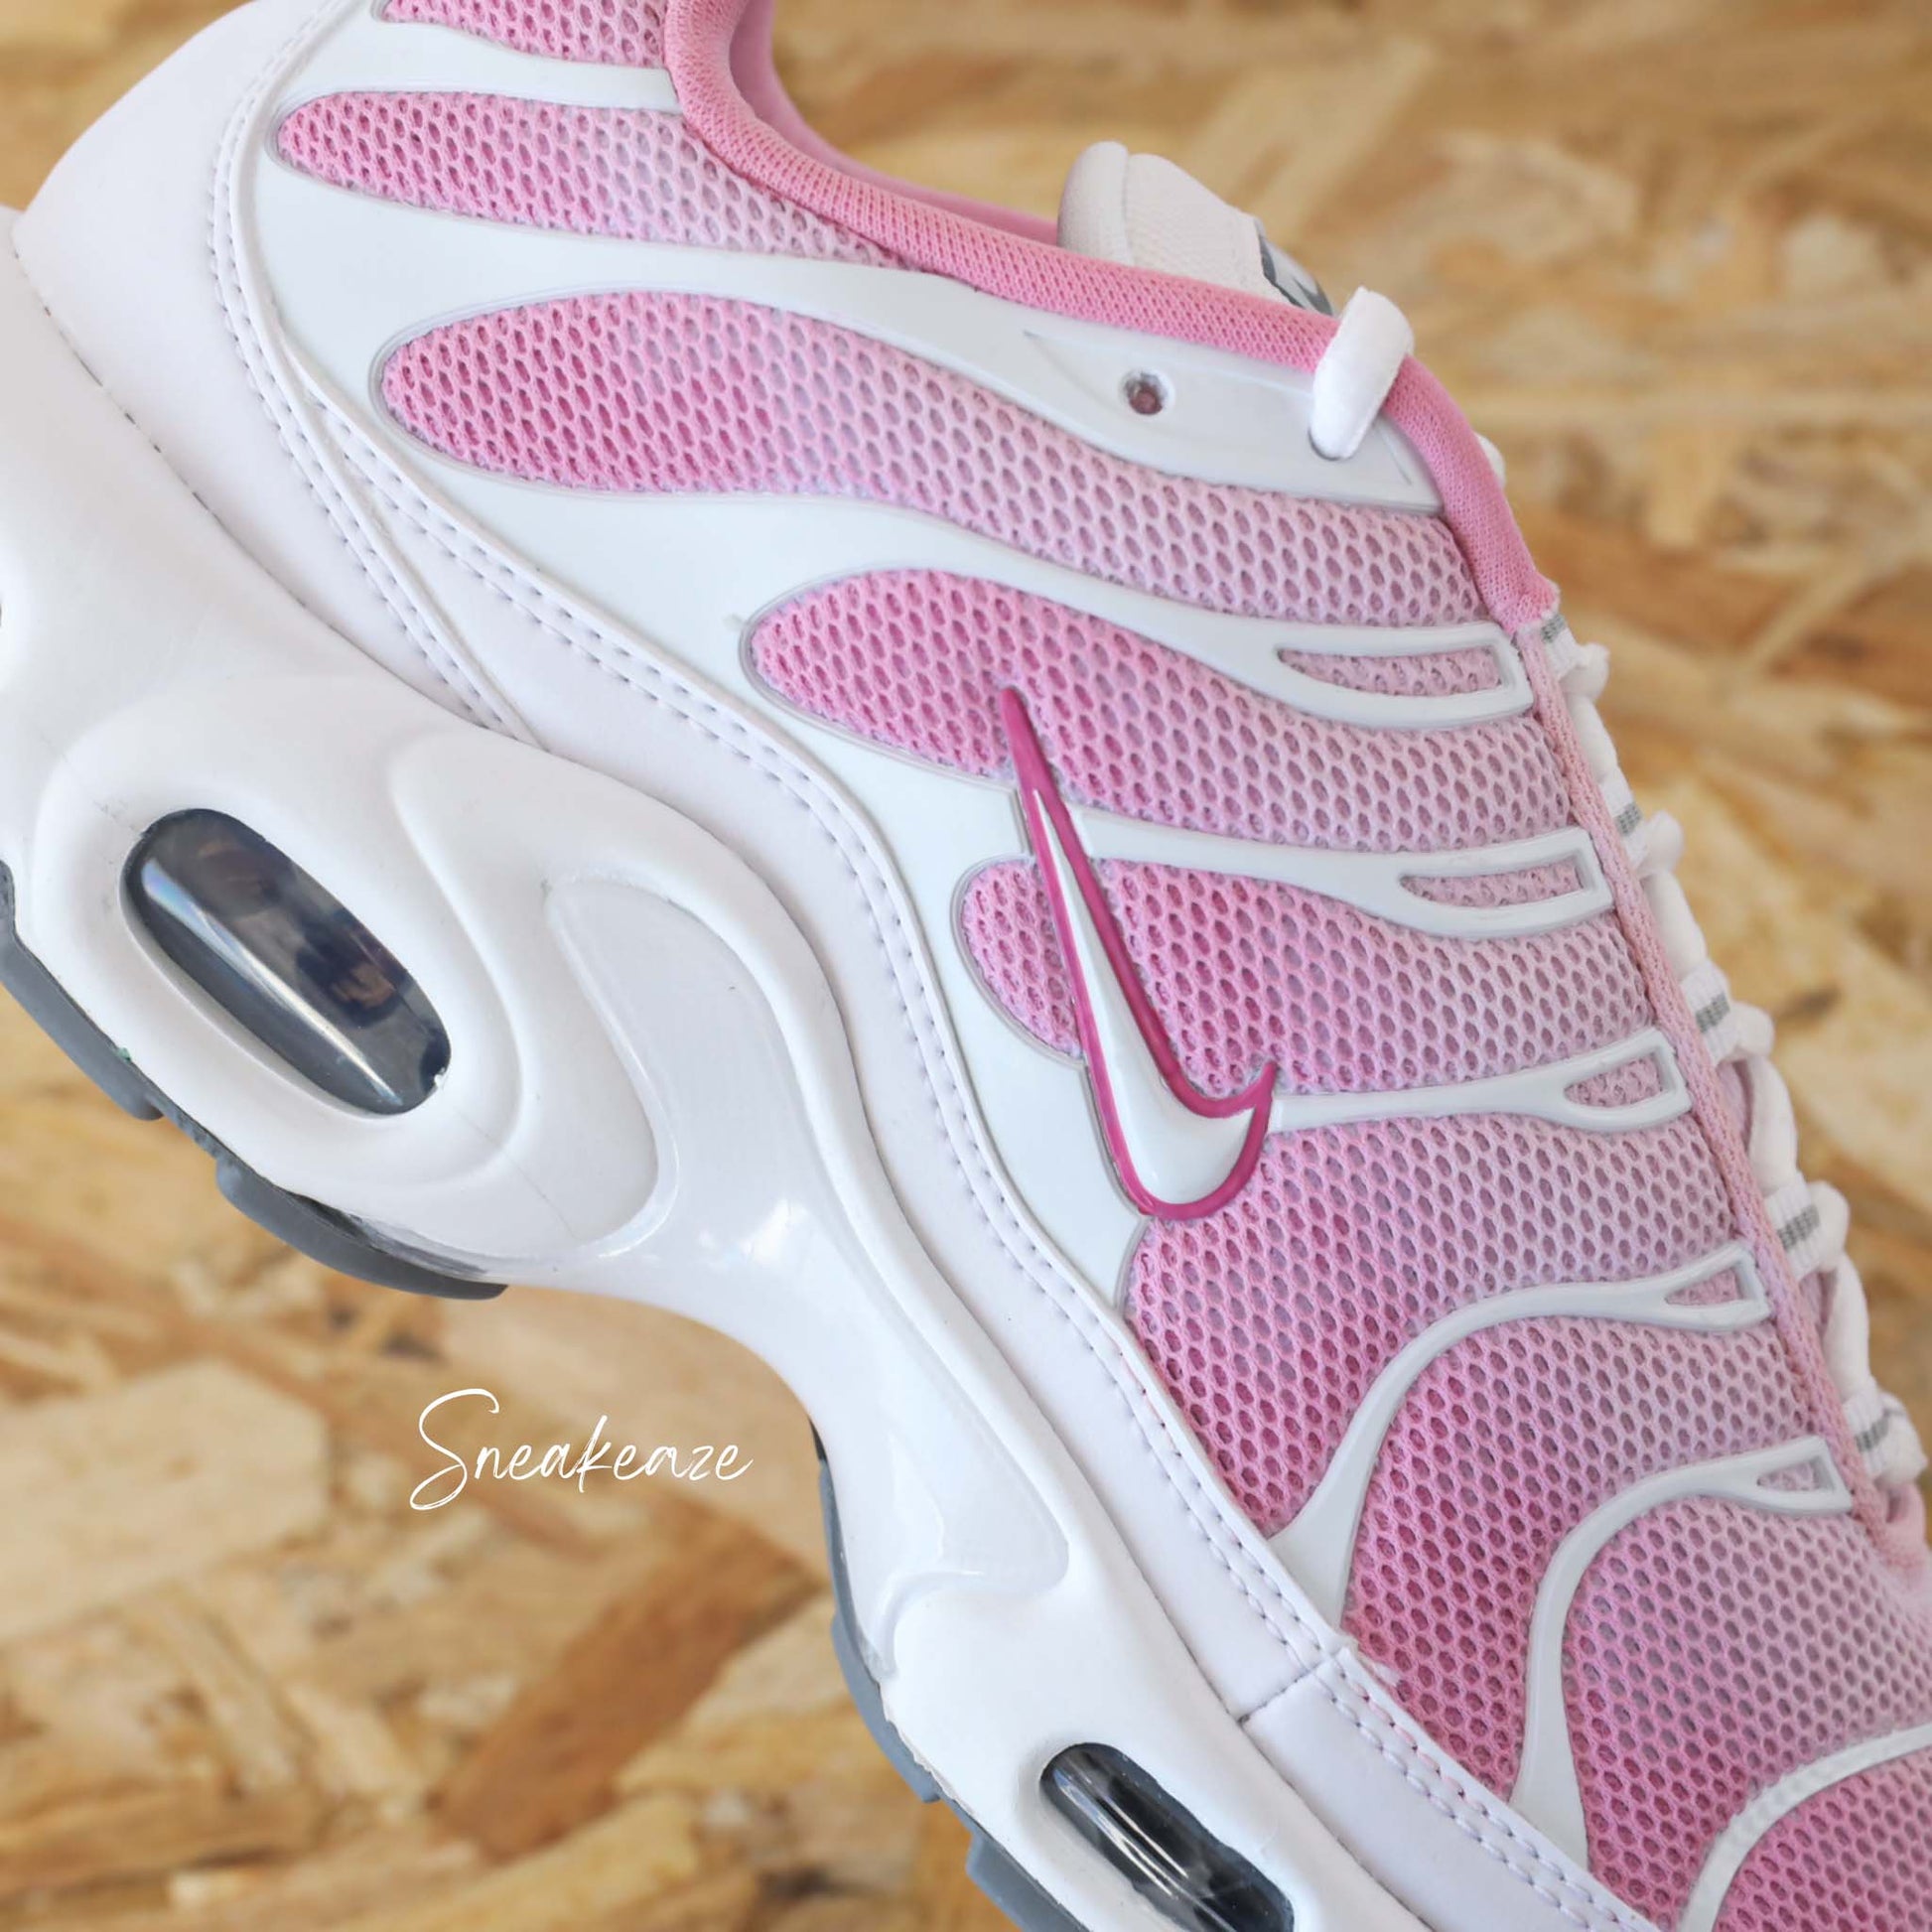 Sneakers Nike Air Max Plus TN custom Pastel Pink - chaussures tuned personnalisées style TN Atlanta à la main pour homme et femme - sneakeaze customs skz